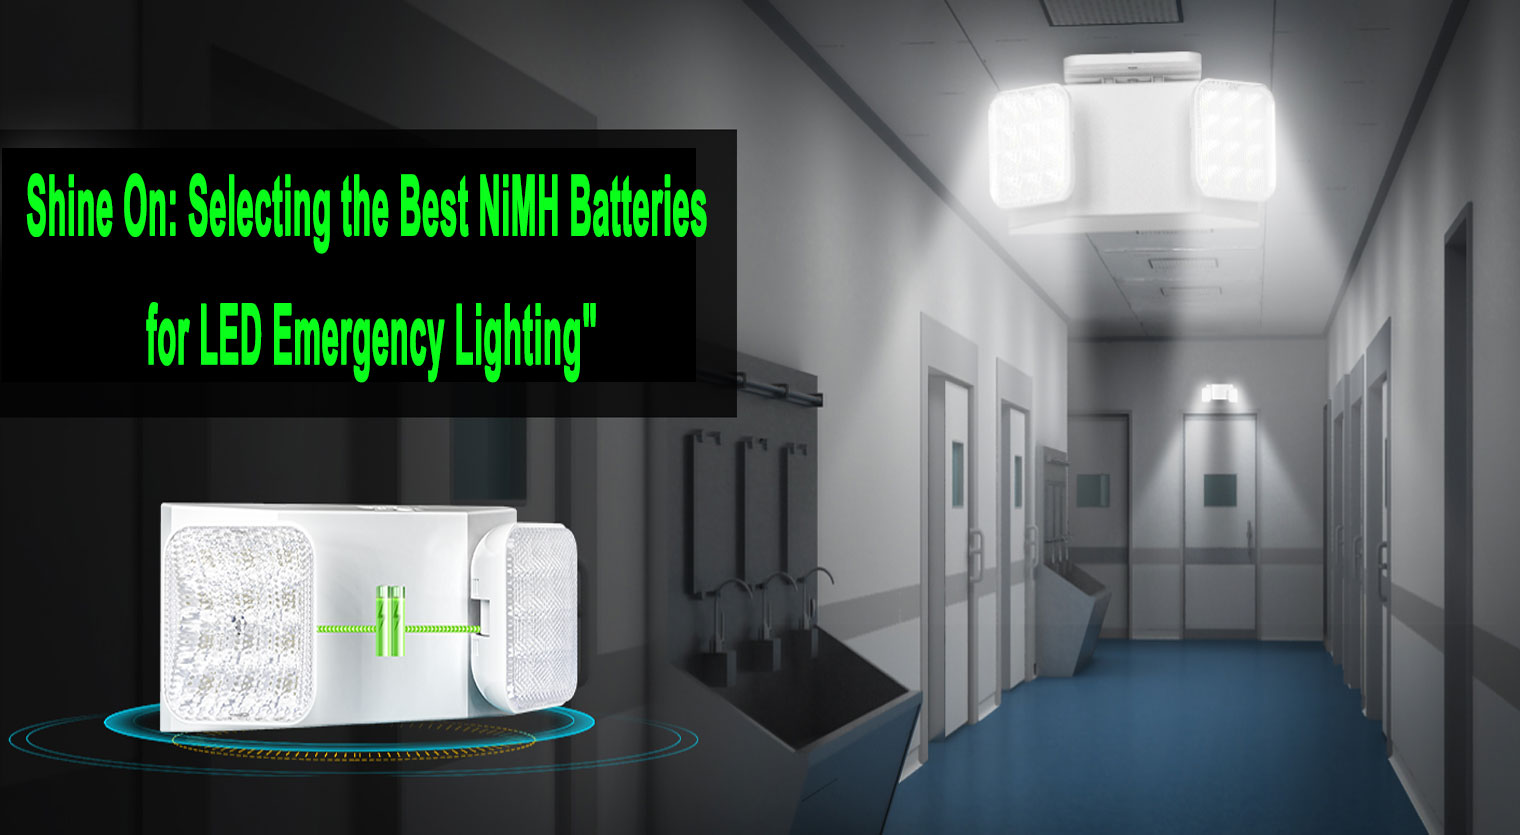 Փայլում. Ընտրելով լավագույն NiMH մարտկոցները LED արտակարգ լուսավորության համար